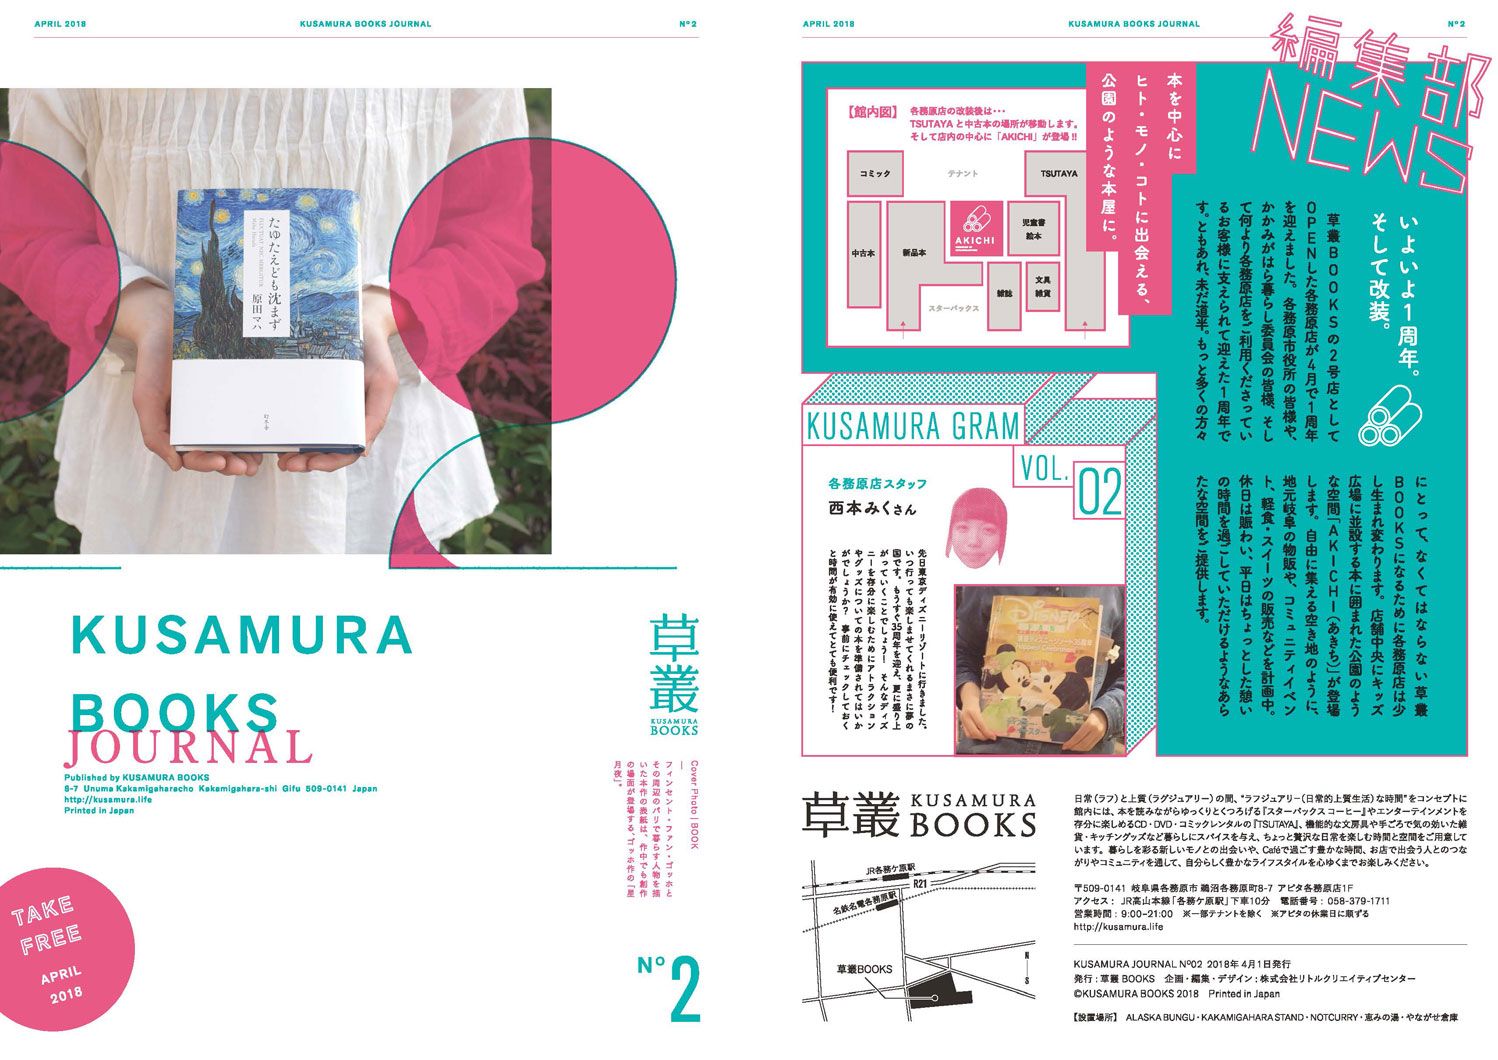 KUSAMURA BOOKS JOURNALの写真です